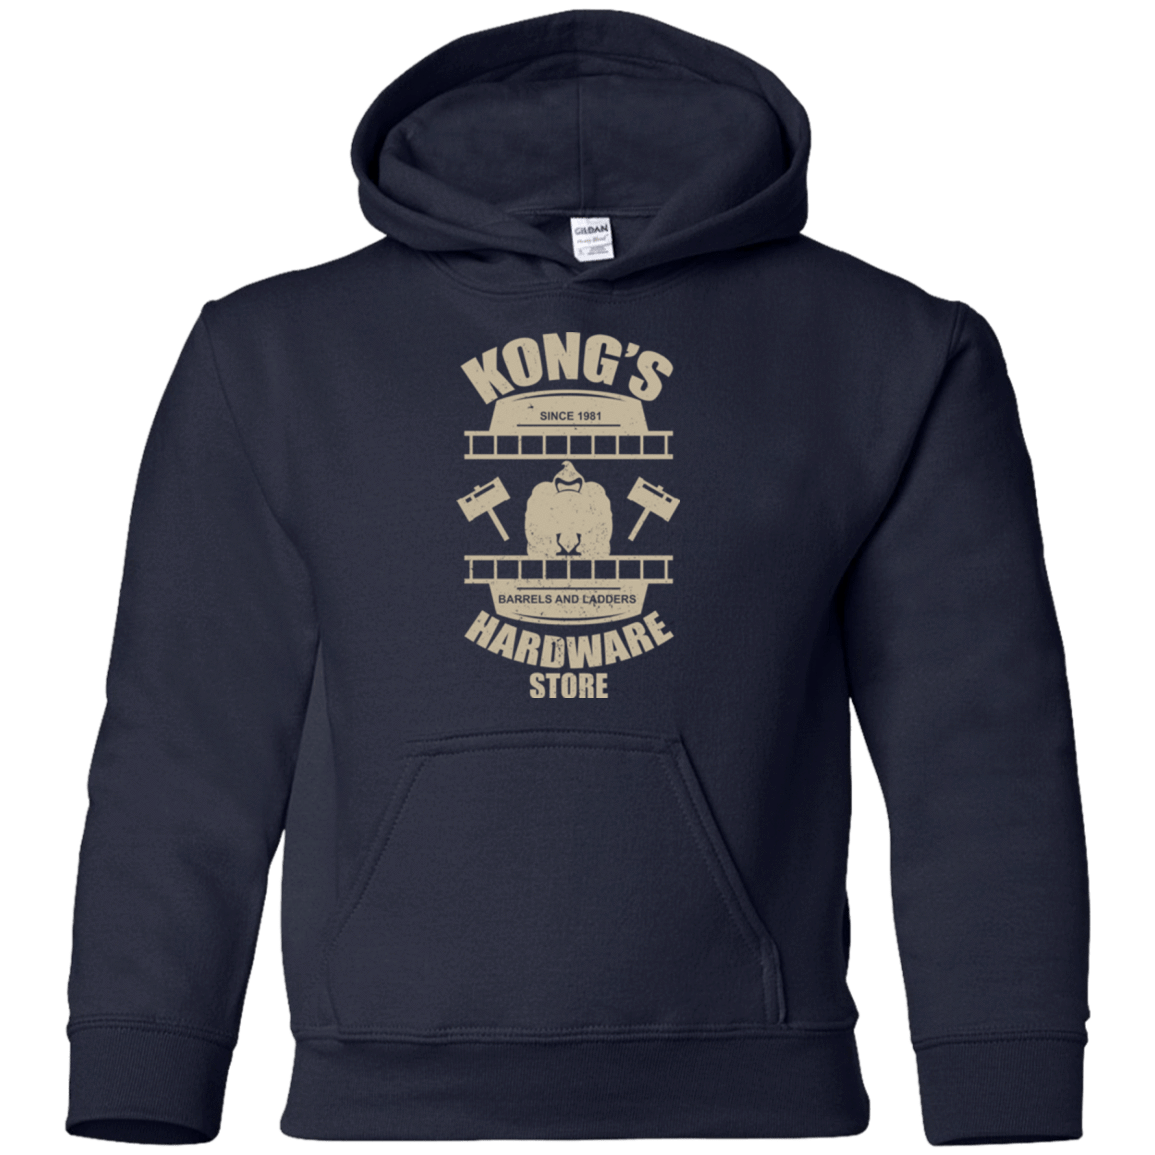 Sweatshirts Navy / YS Kongs Hardware Store Youth Hoodie